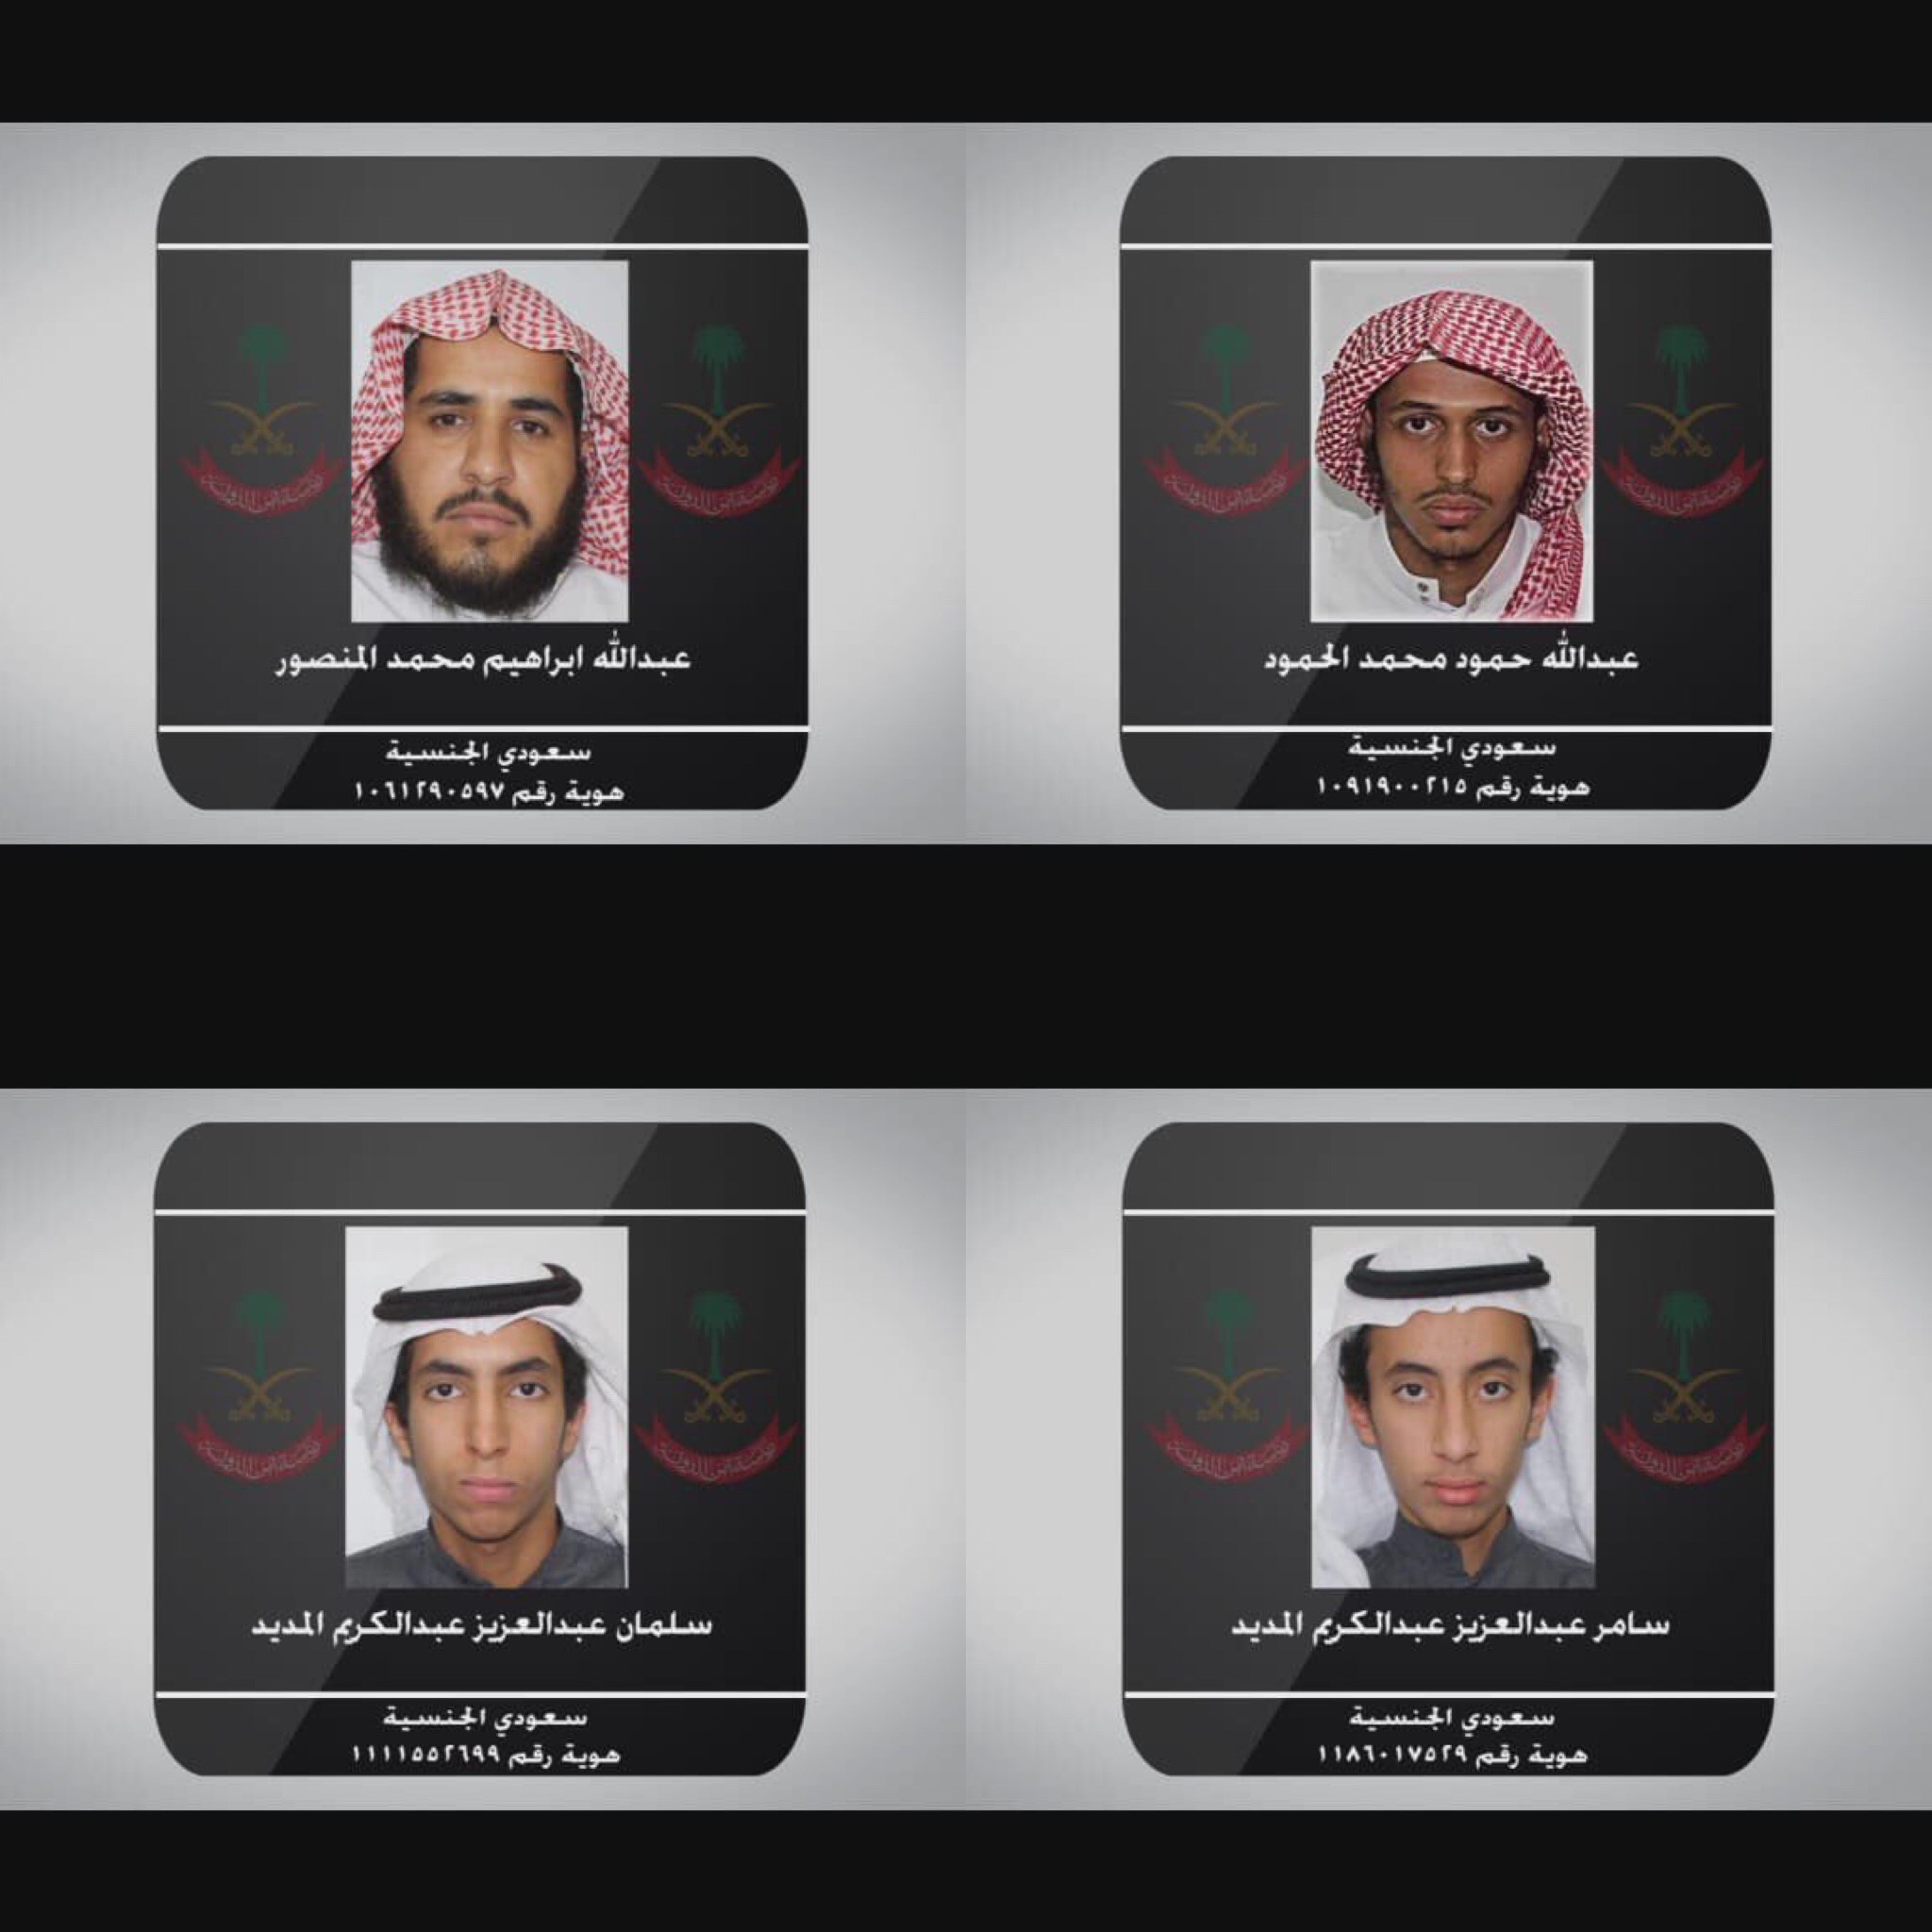 بالأسماء .. أمن الدولة يكشف هويات الإرهابيين الأربعة في الزلفي وعلاقتهم بـ داعش